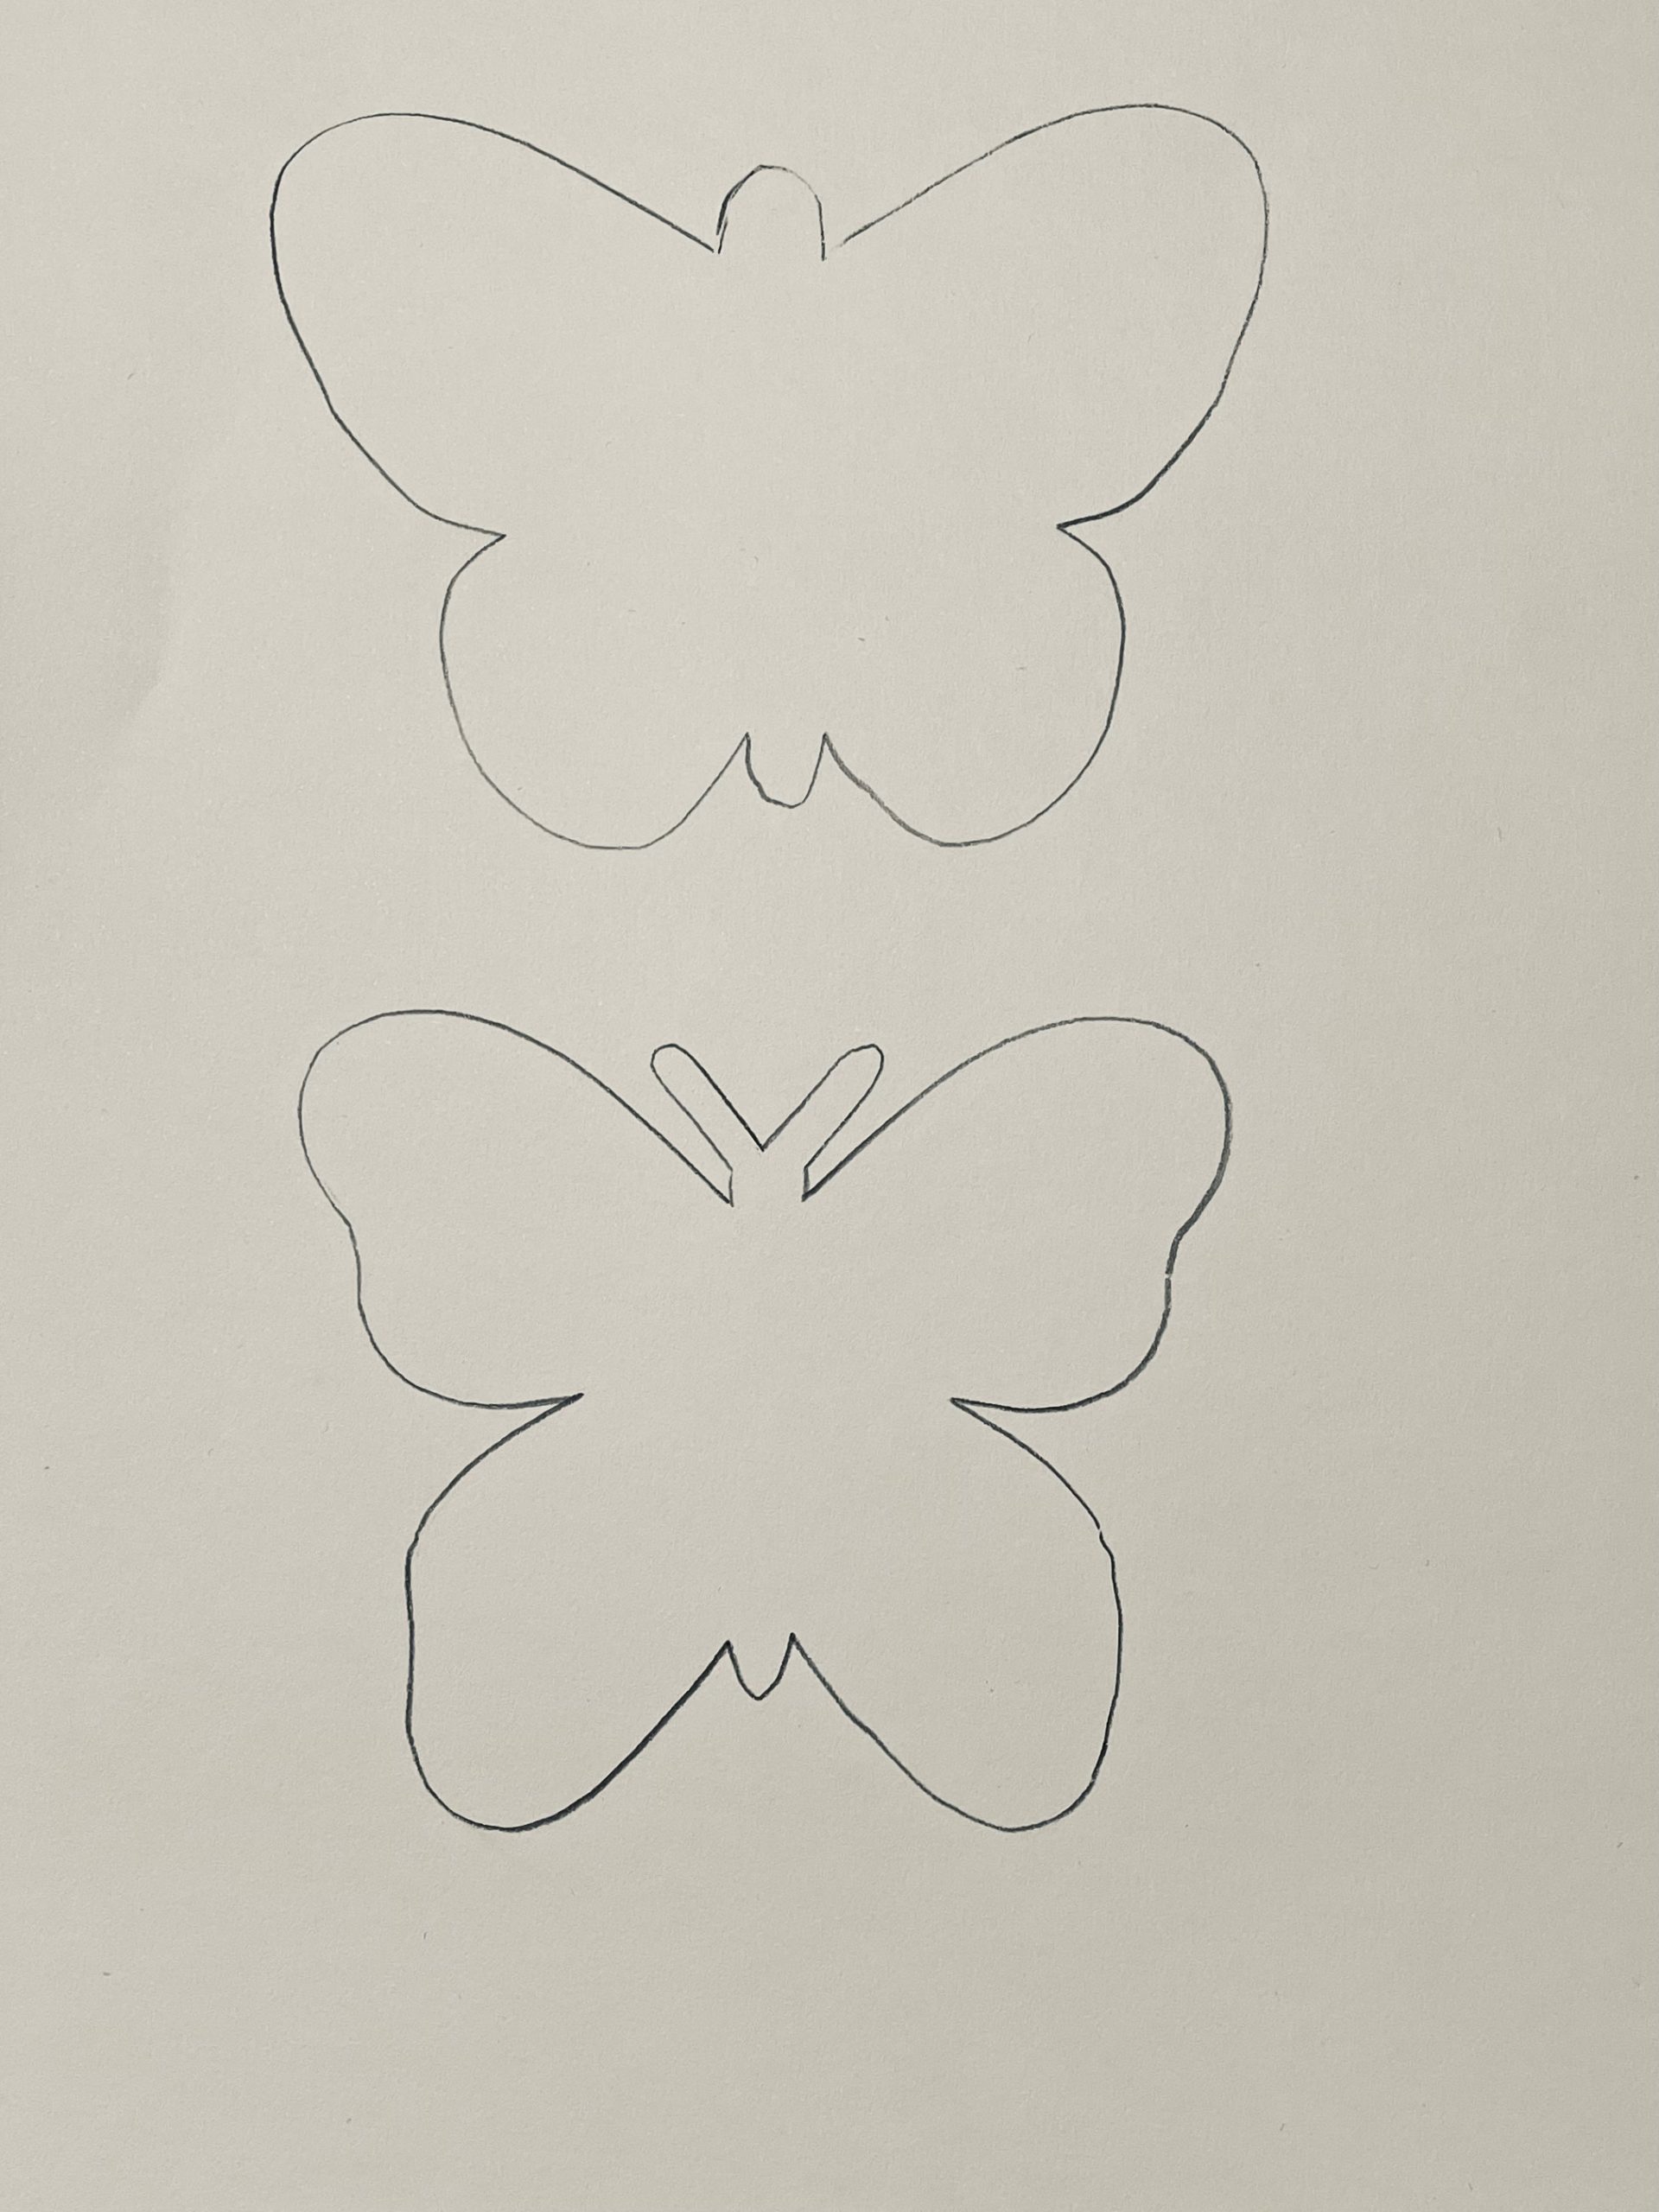 Bild zum Schritt 2 für die Kinder-Beschäftigung: 'Jetzt malt ihr euch eine Schmetterlingsschablone oder ihr druckt euch...'